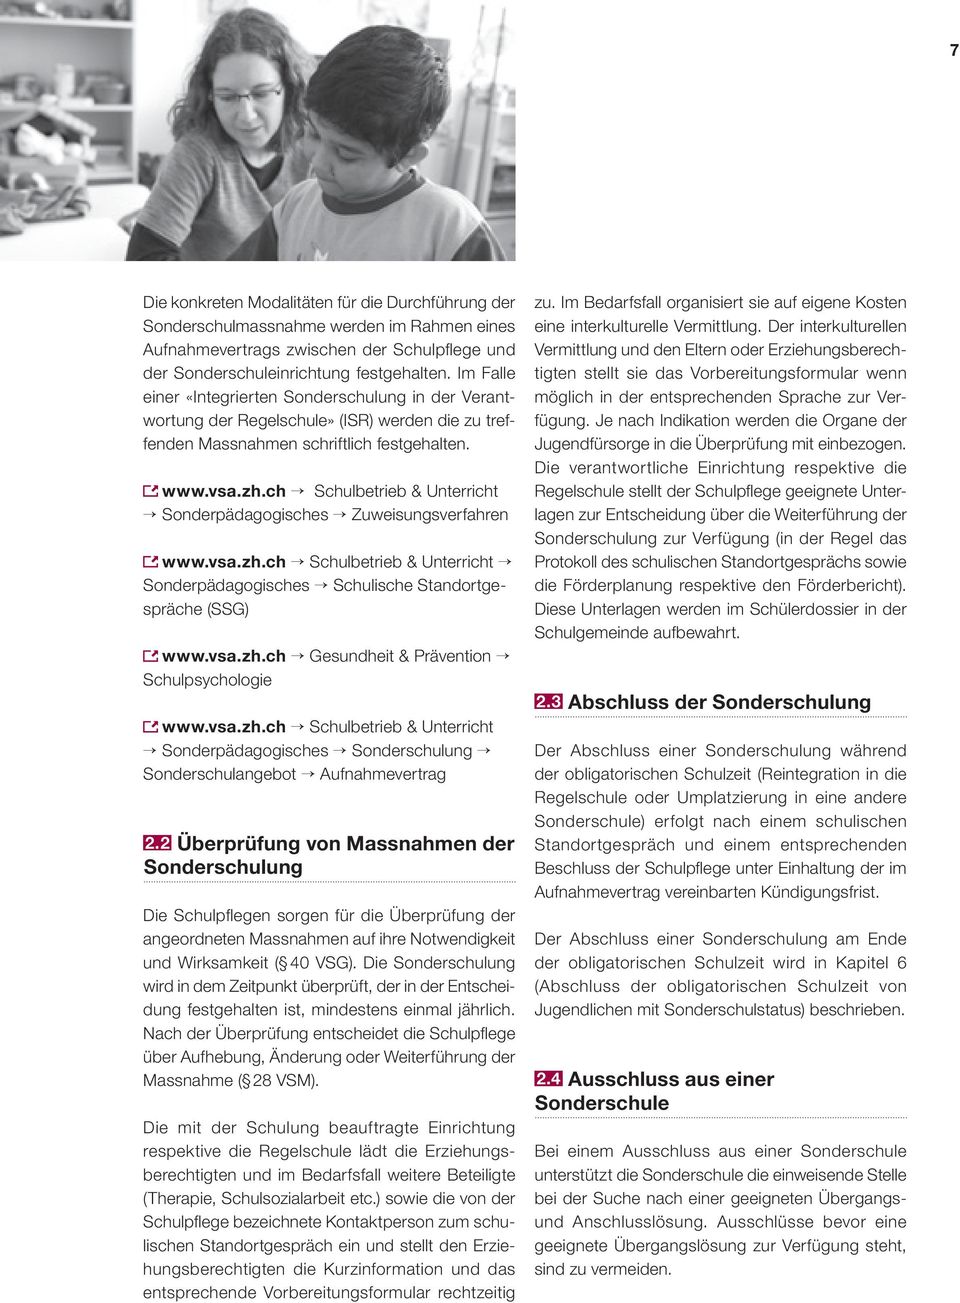 ch Schulbetrieb & Unterricht Sonderpädagogisches Zuweisungsverfahren www.vsa.zh.ch Schulbetrieb & Unterricht Sonderpädagogisches Schulische Standortgespräche (SSG) www.vsa.zh.ch Gesundheit & Prävention Schulpsychologie www.